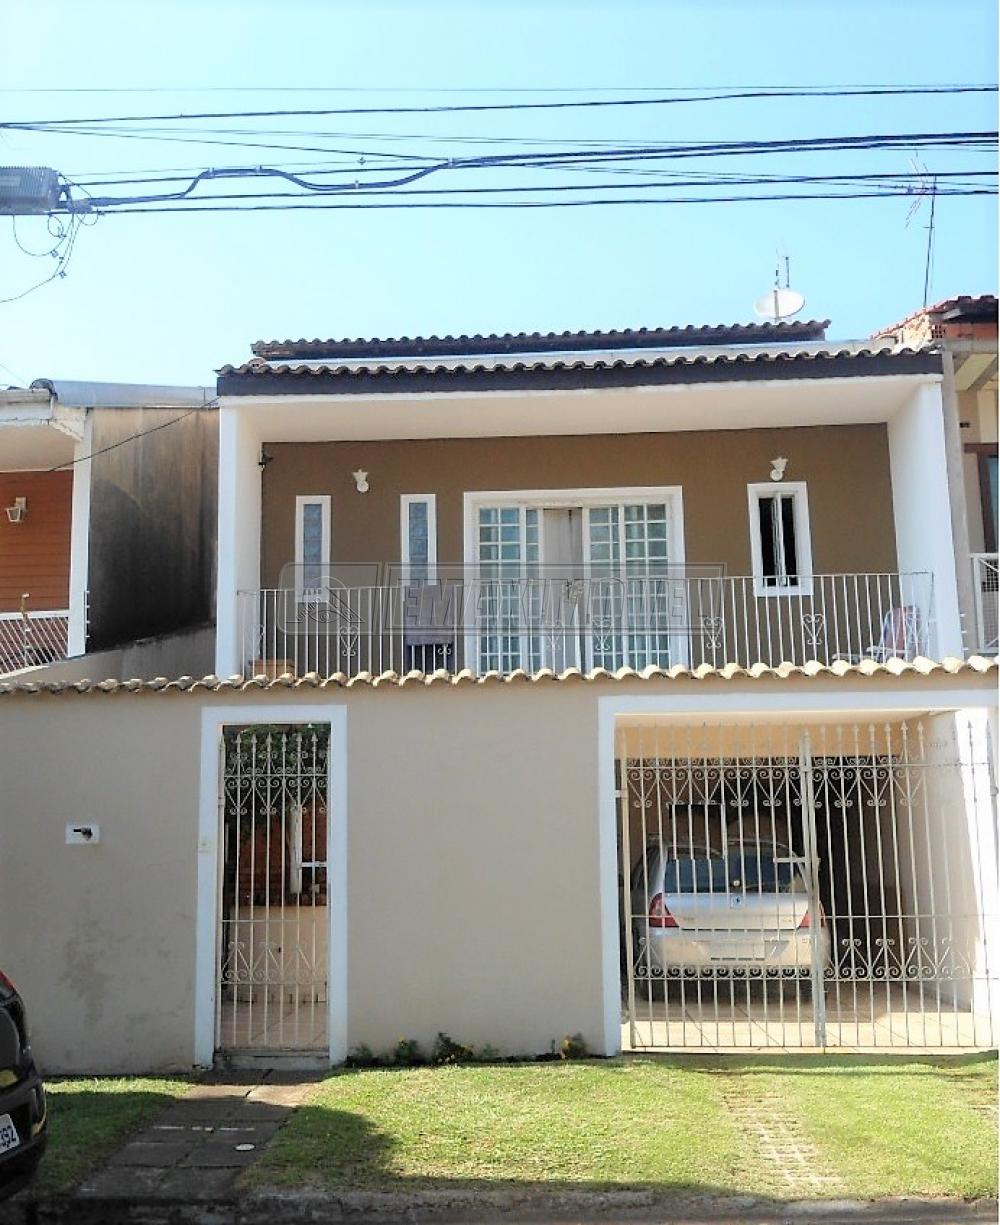 Comprar Casa / em Bairros em Sorocaba R$ 480.000,00 - Foto 1